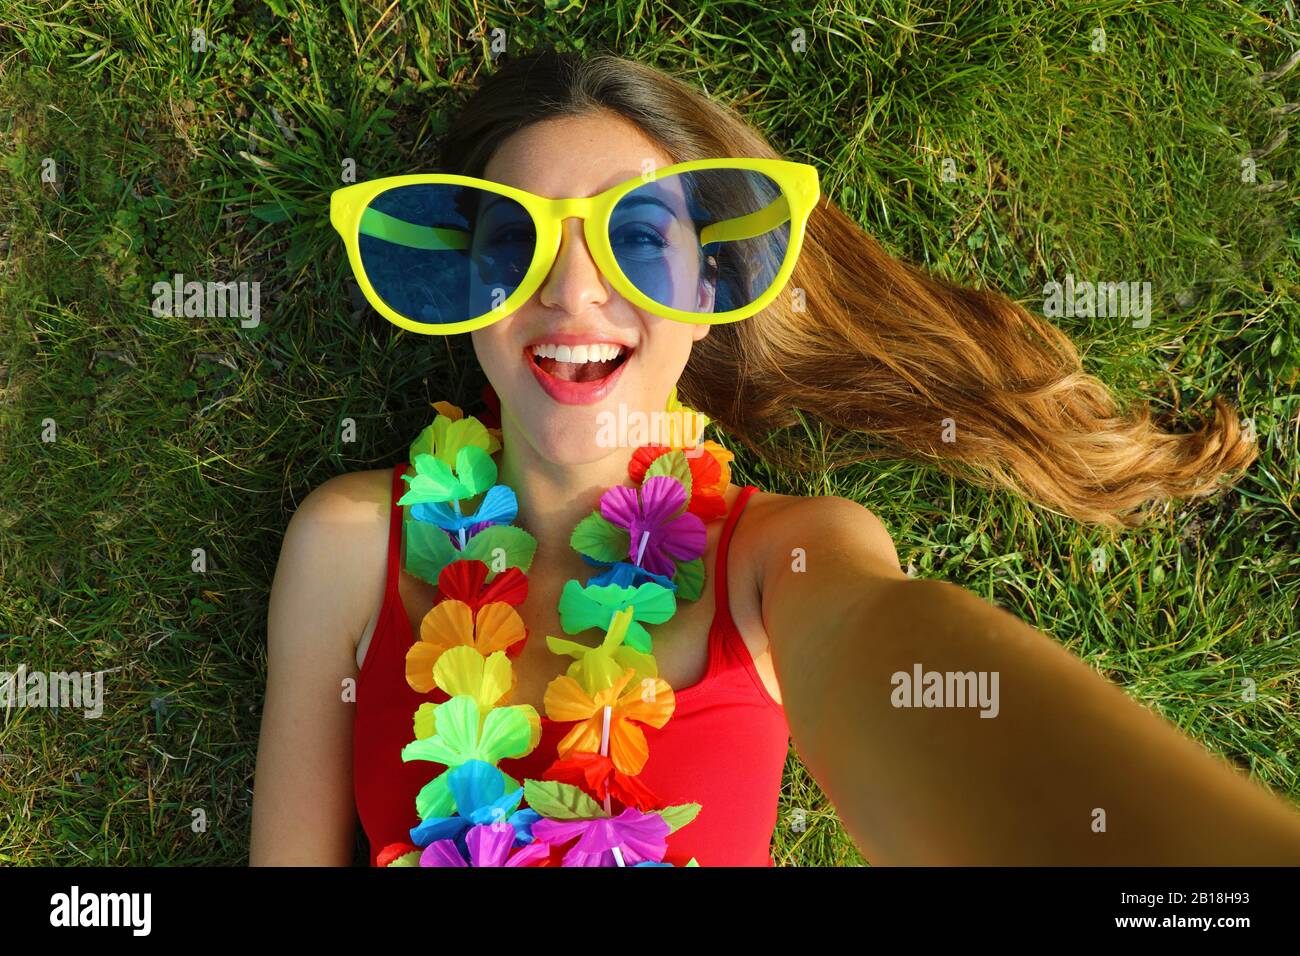 Fille prendre auto portrait après la fête de Carnaval. Selfie de la jeune  femme avec de grandes lunettes de soleil drôles et une guirlande carnaval  posée sur l'herbe Photo Stock - Alamy